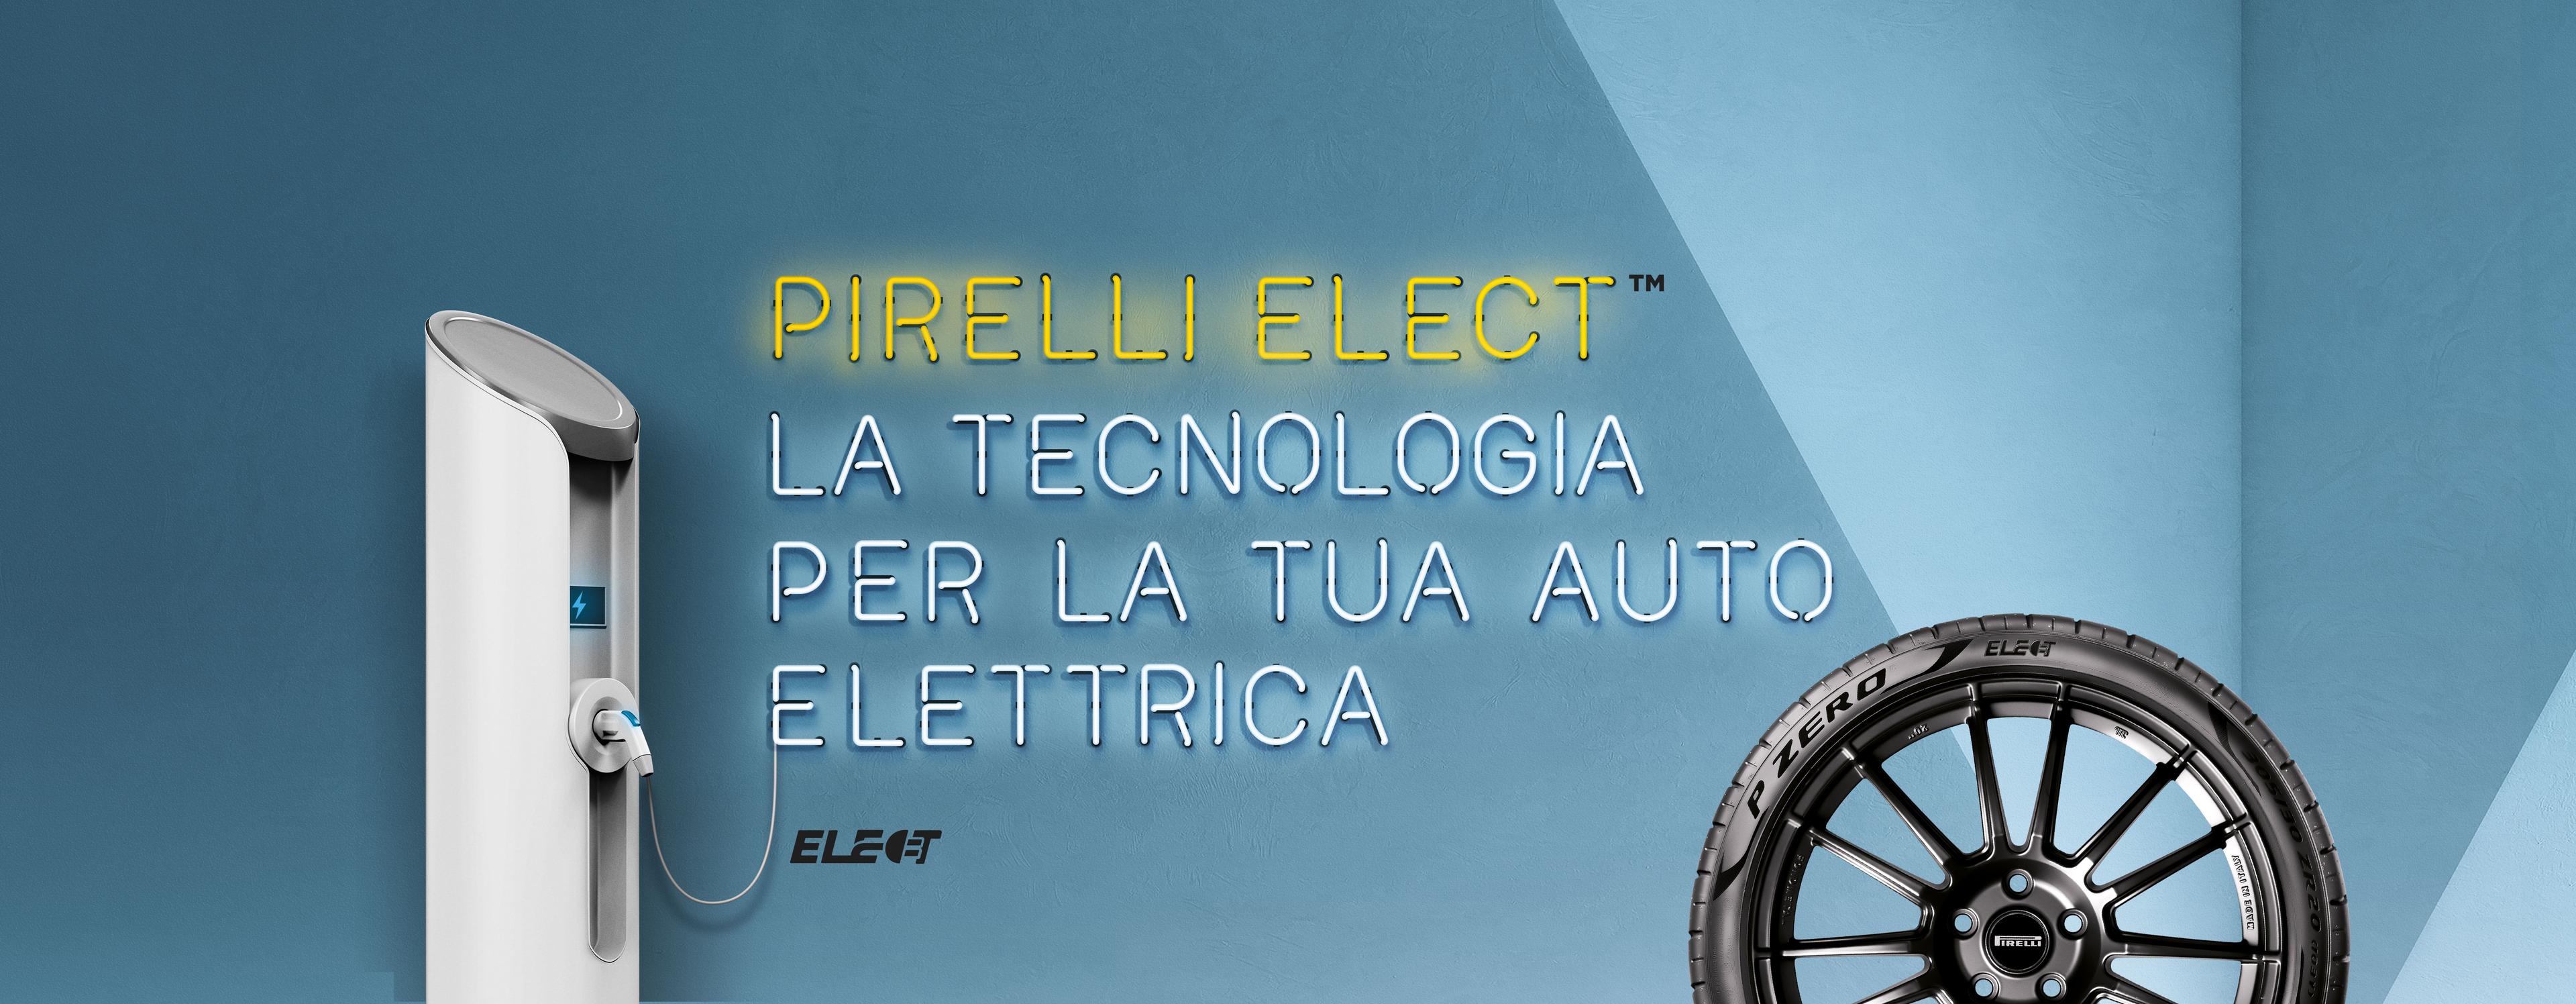 Pirelli Elect la tecnologia per la tua auto elettrica